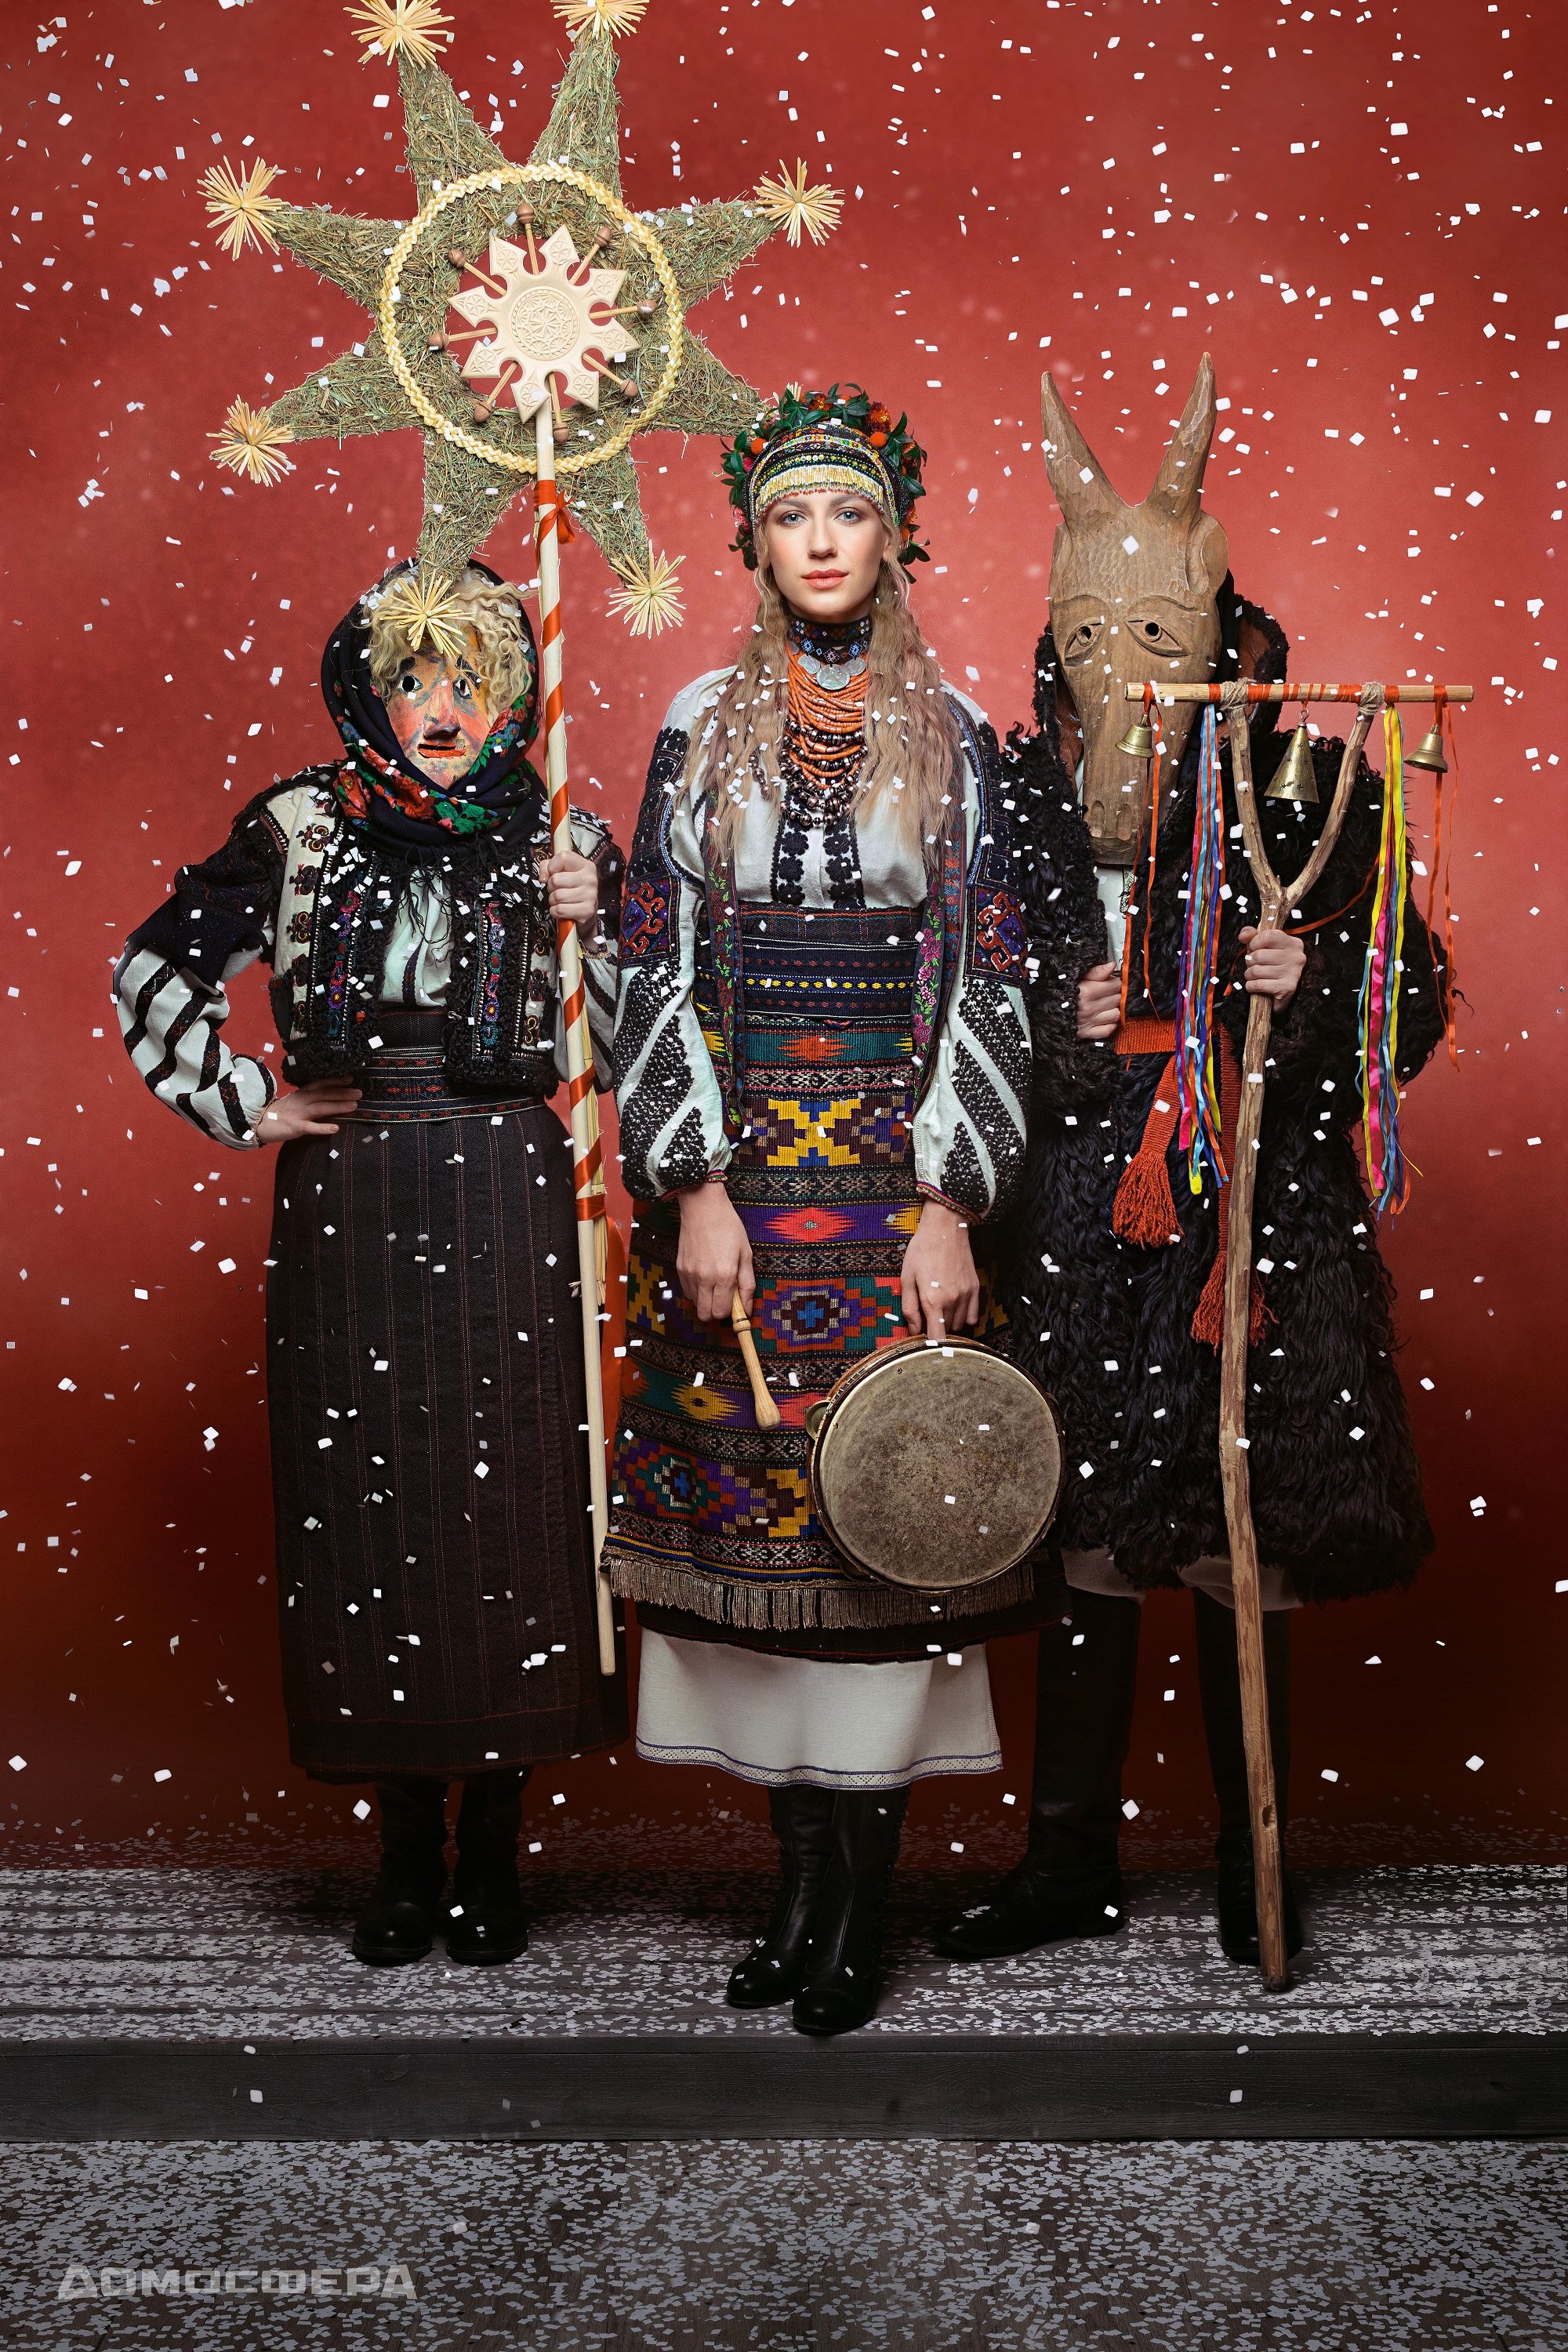 'Щирі.Свята' - зірковий календар, який відтворює багатство української нації - фото 412636